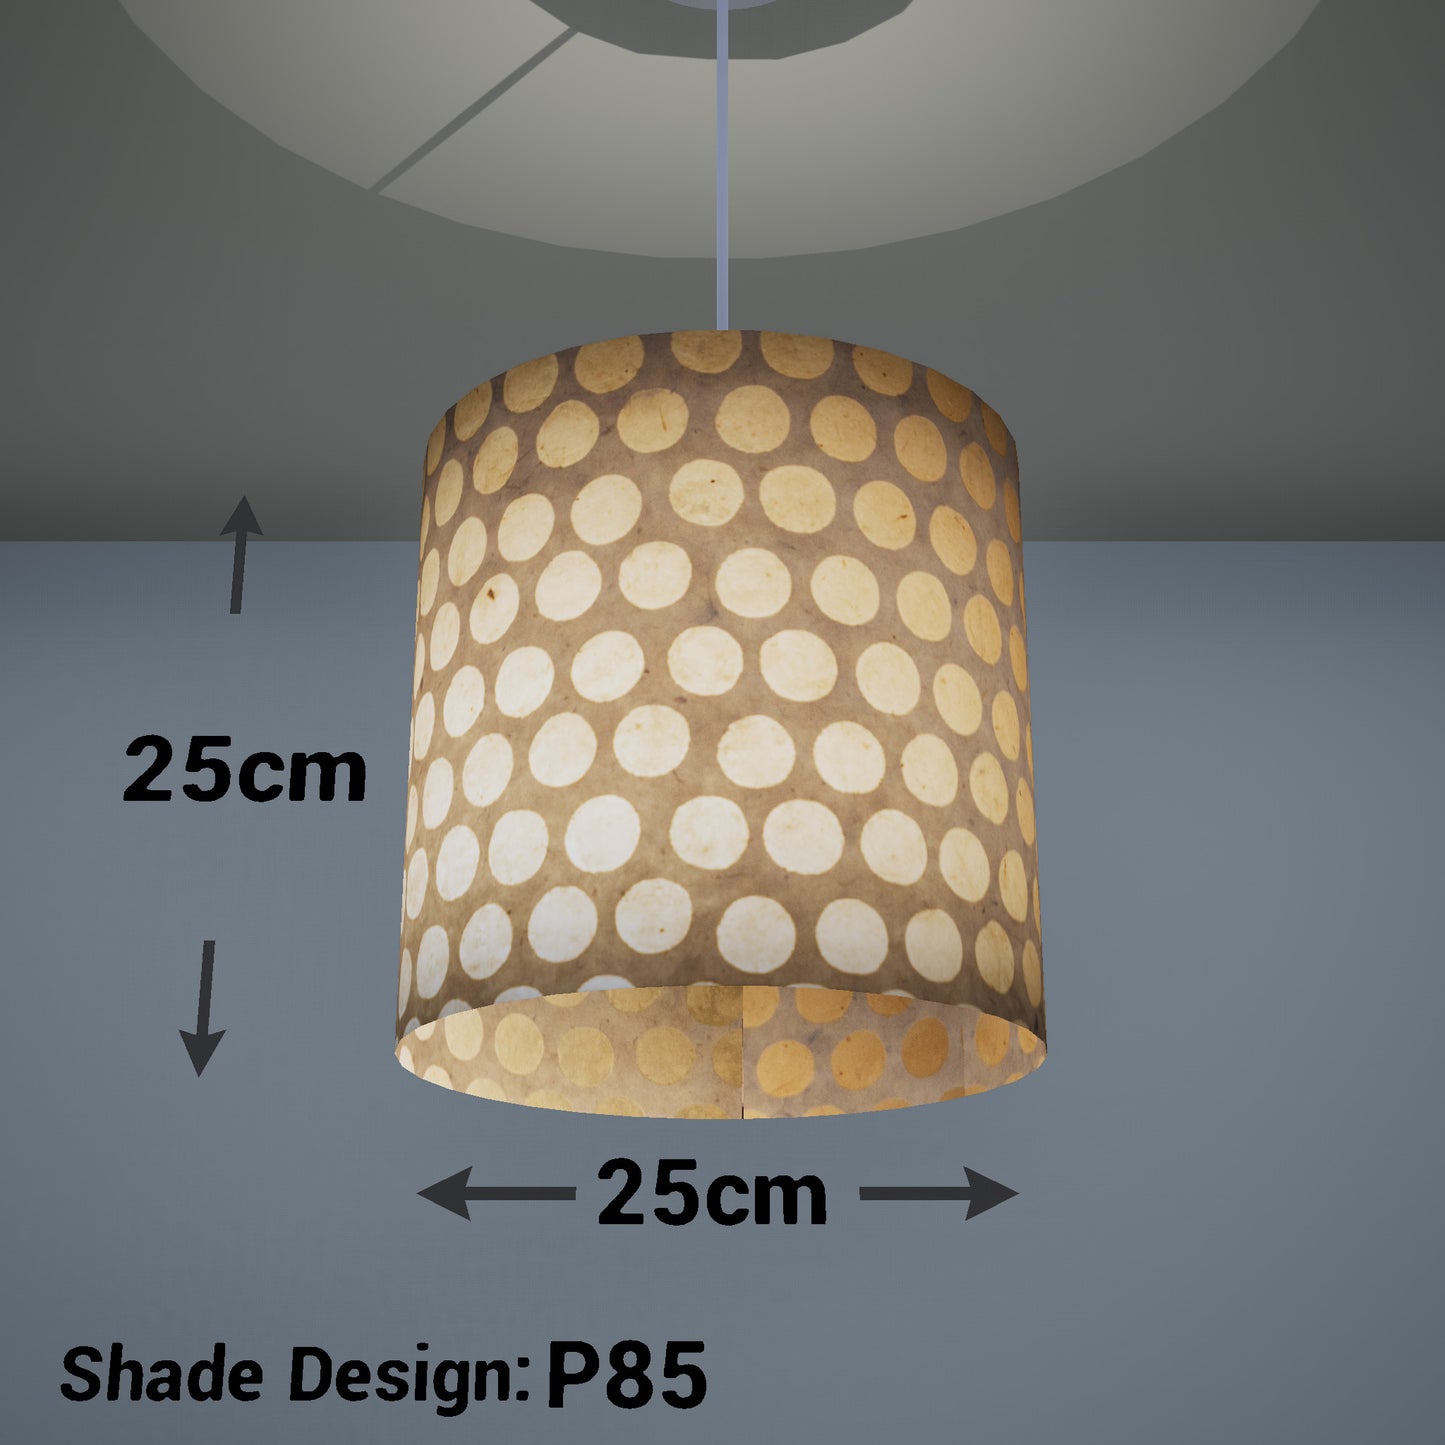 Drum Lamp Shade - P85 ~ Batik Dots on Natural, 25cm x 25cm